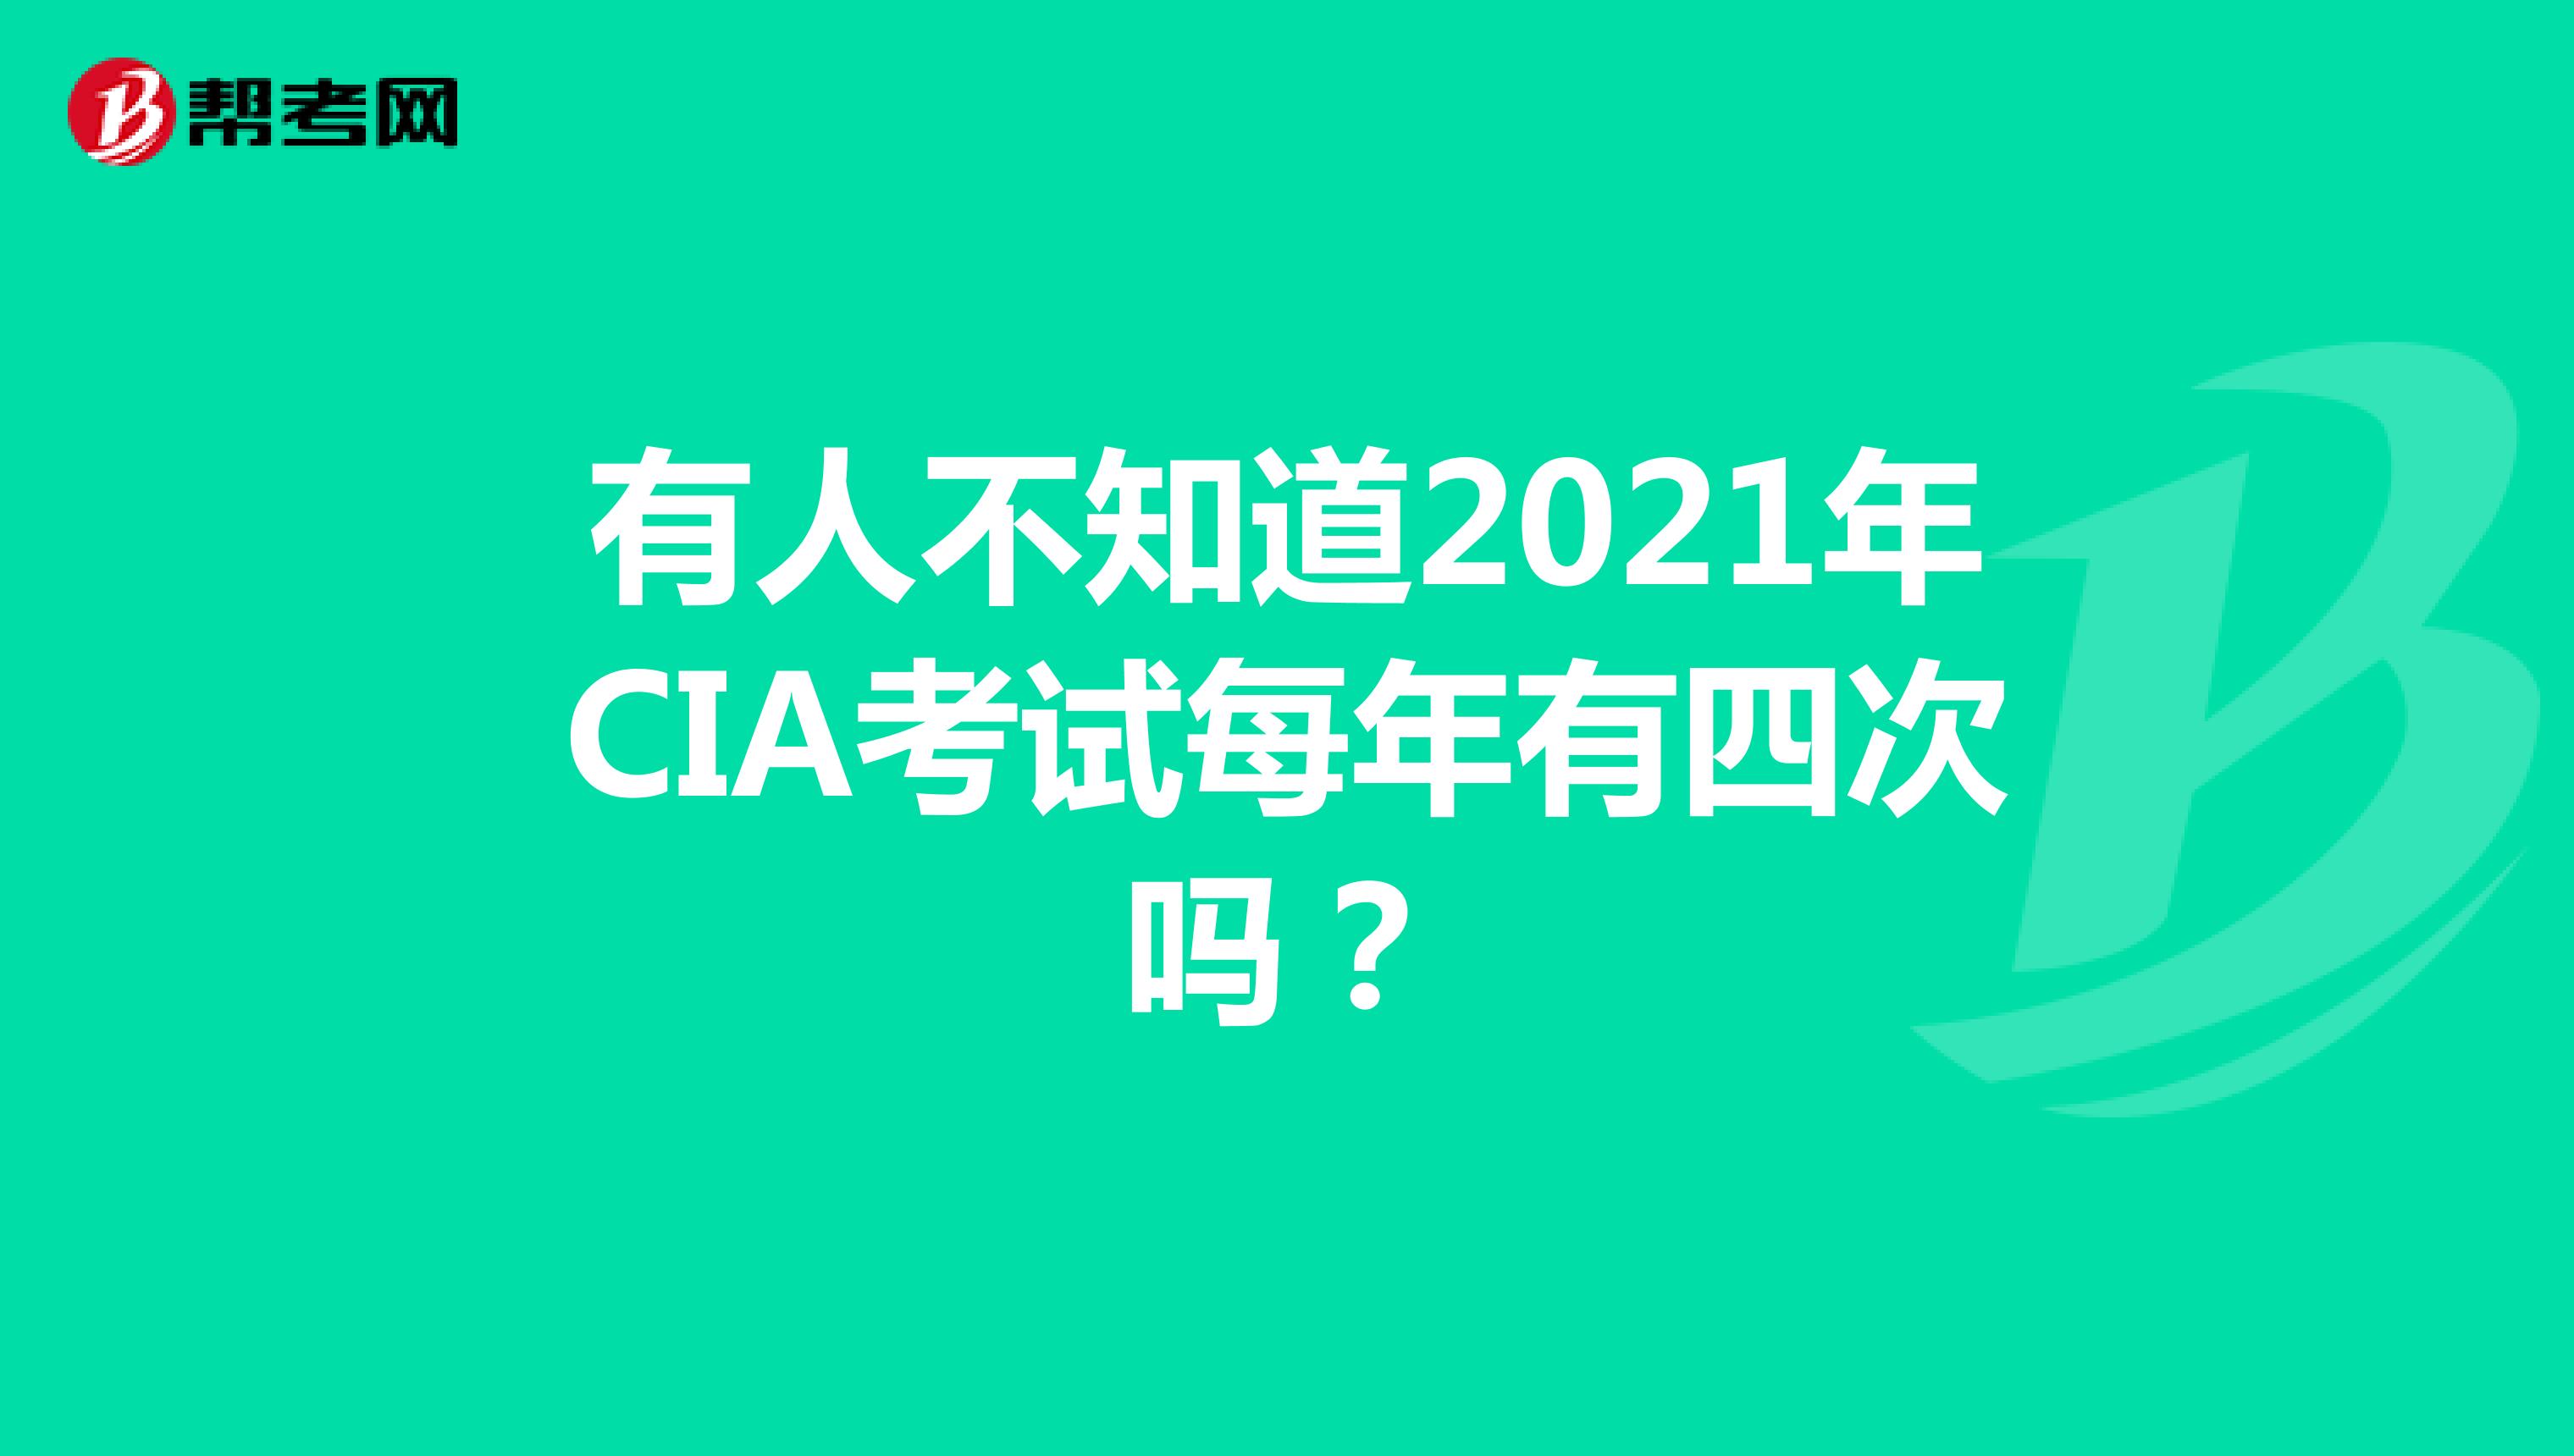 有人不知道2021年CIA考试每年有四次吗？